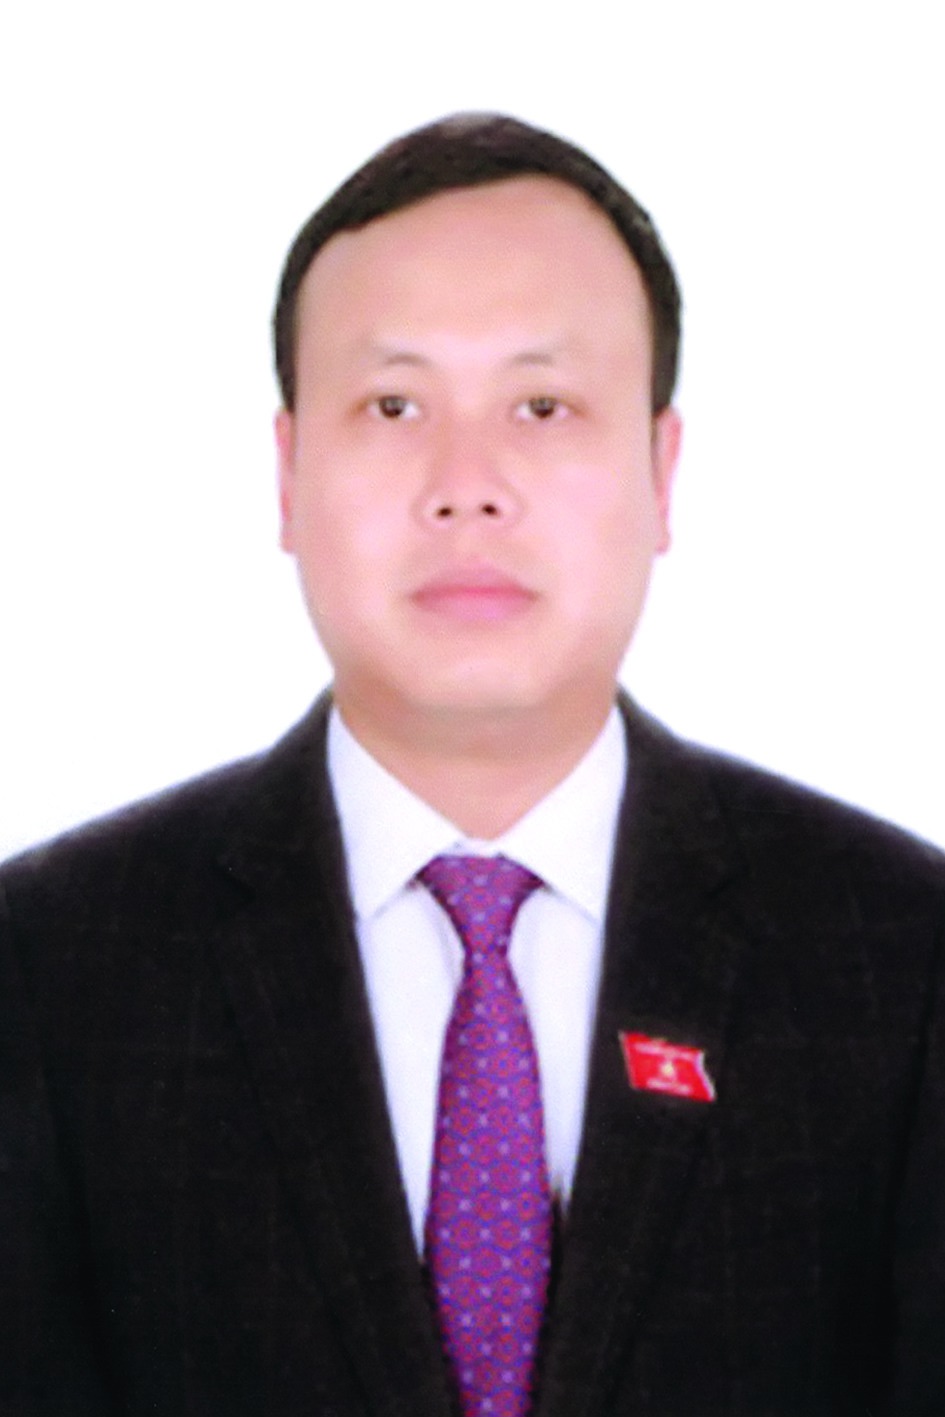 Chương trình hành động của Bí thư Huyện ủy Sóc Sơn Phạm Quang Thanh, ứng cử viên đại biểu HĐND TP Hà Nội nhiệm kỳ 2021 - 2026 - Ảnh 1